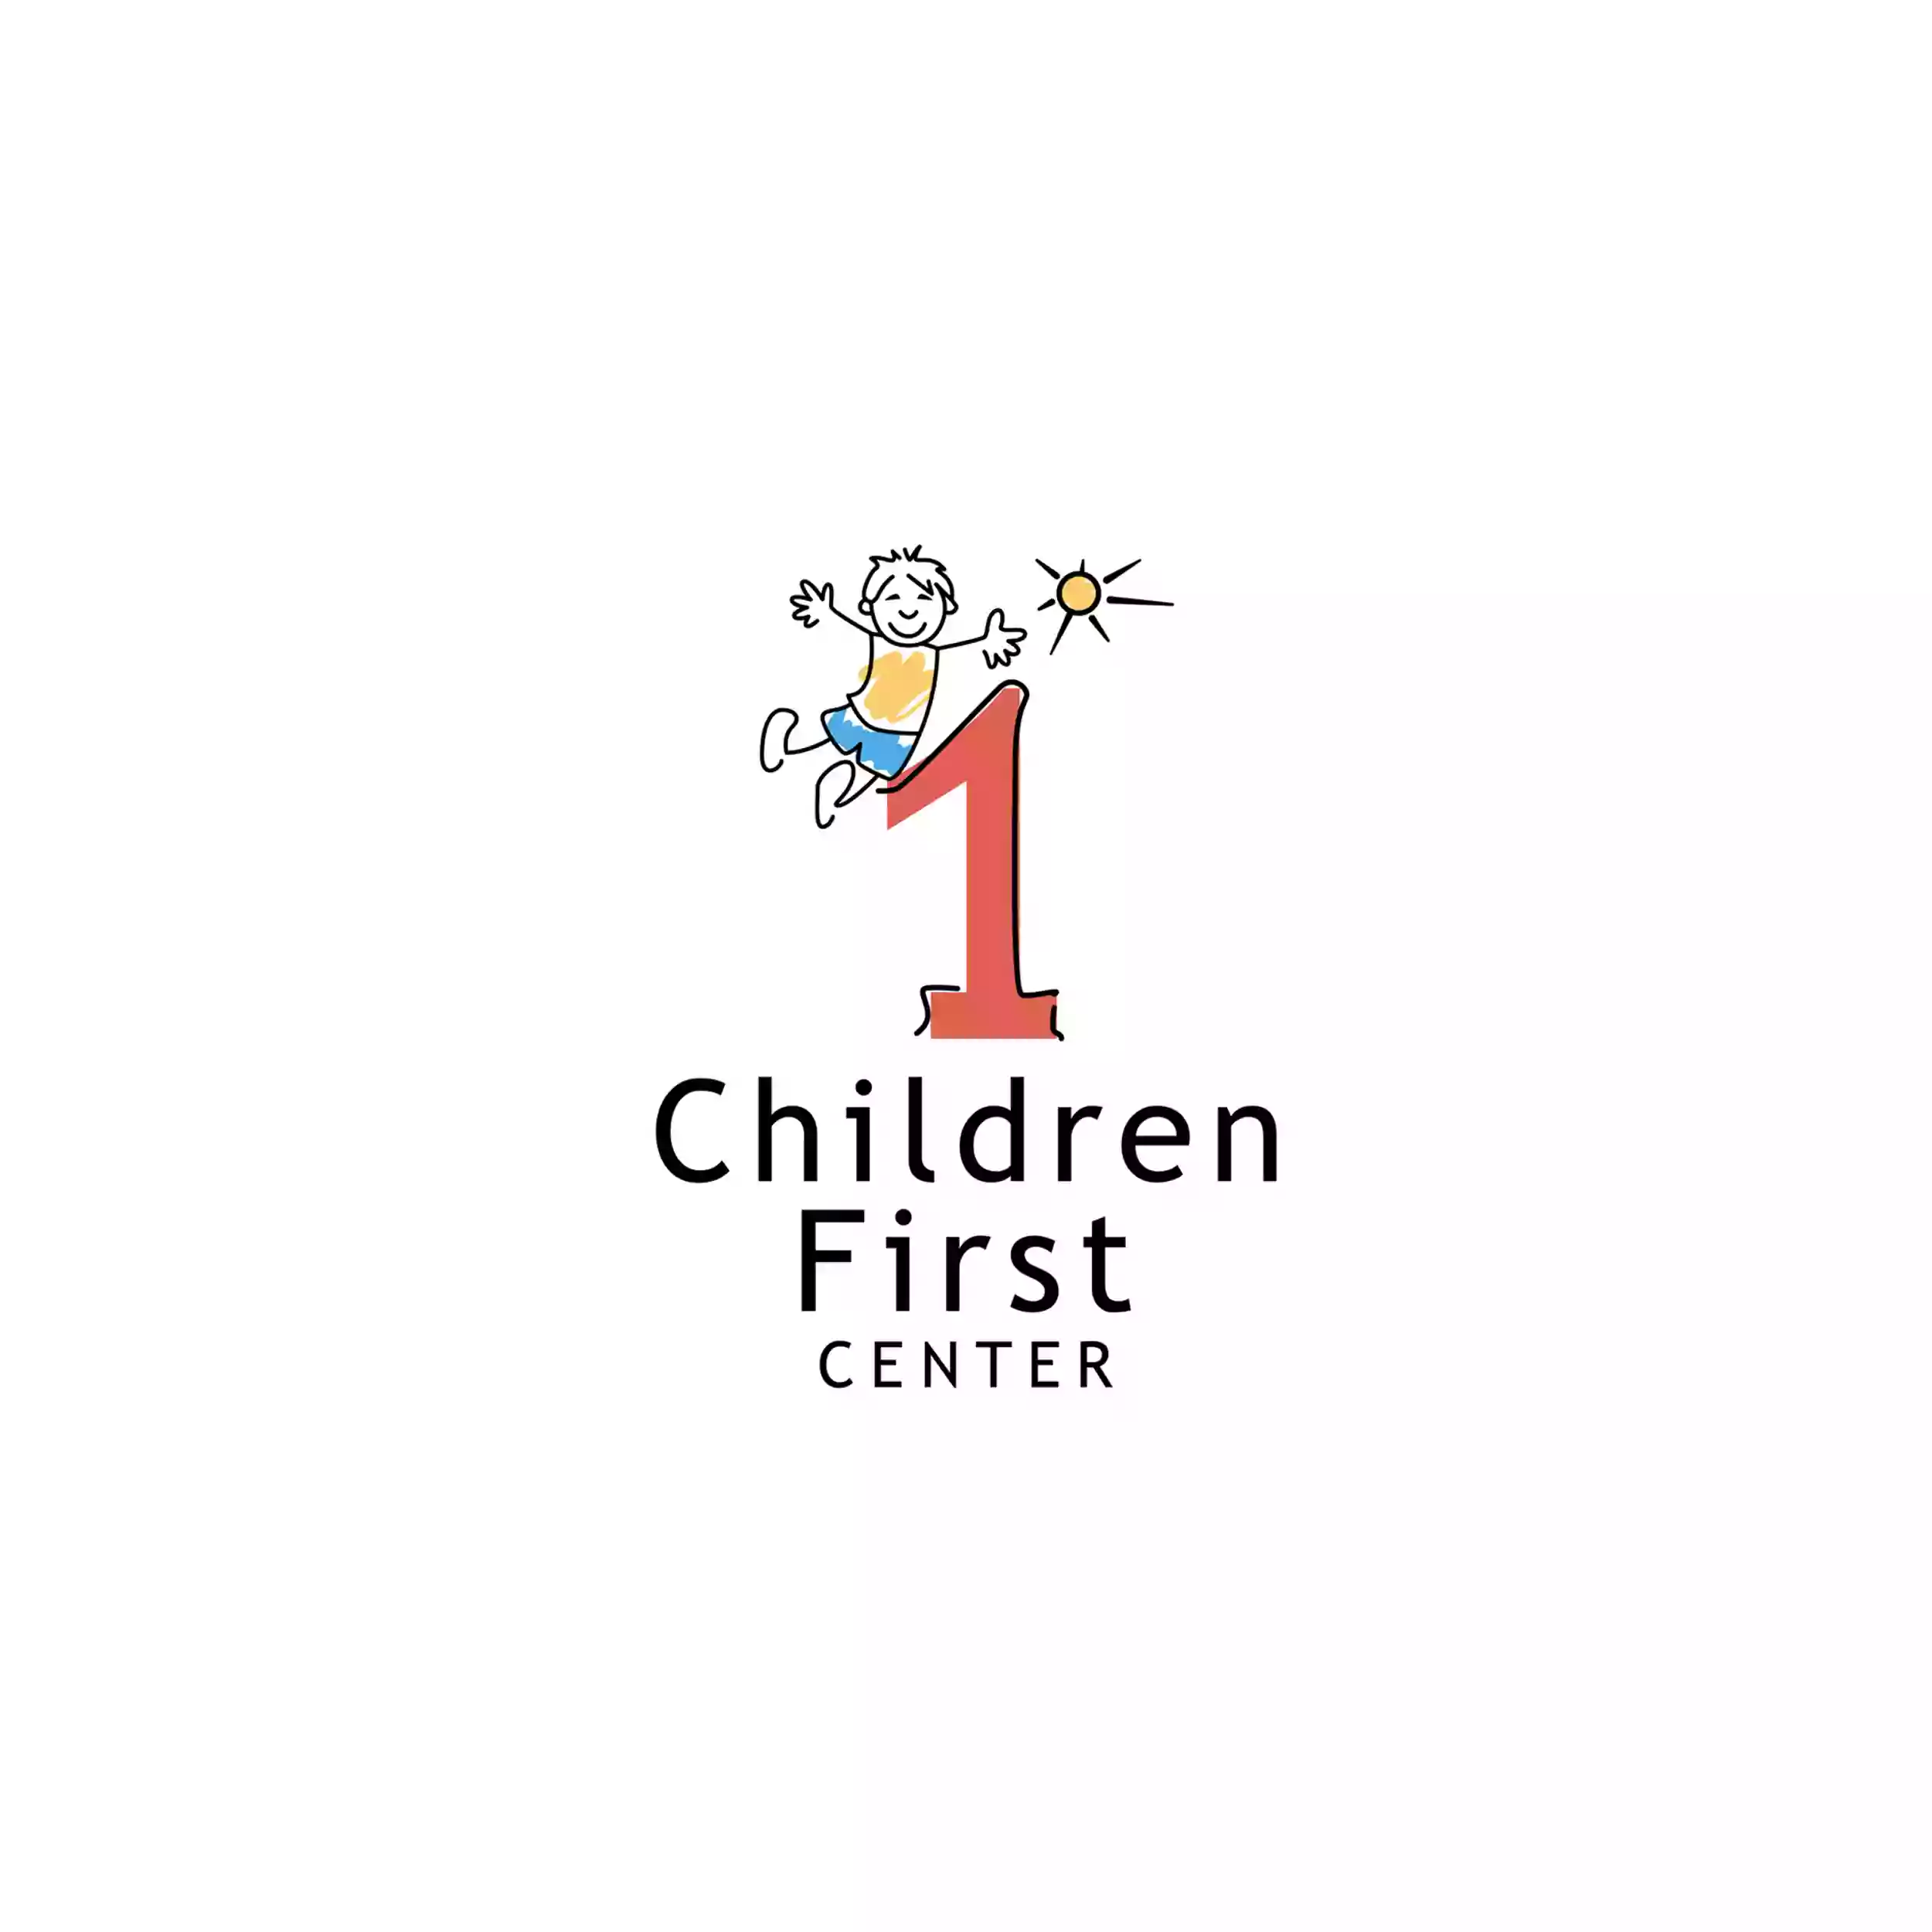 Children First Center